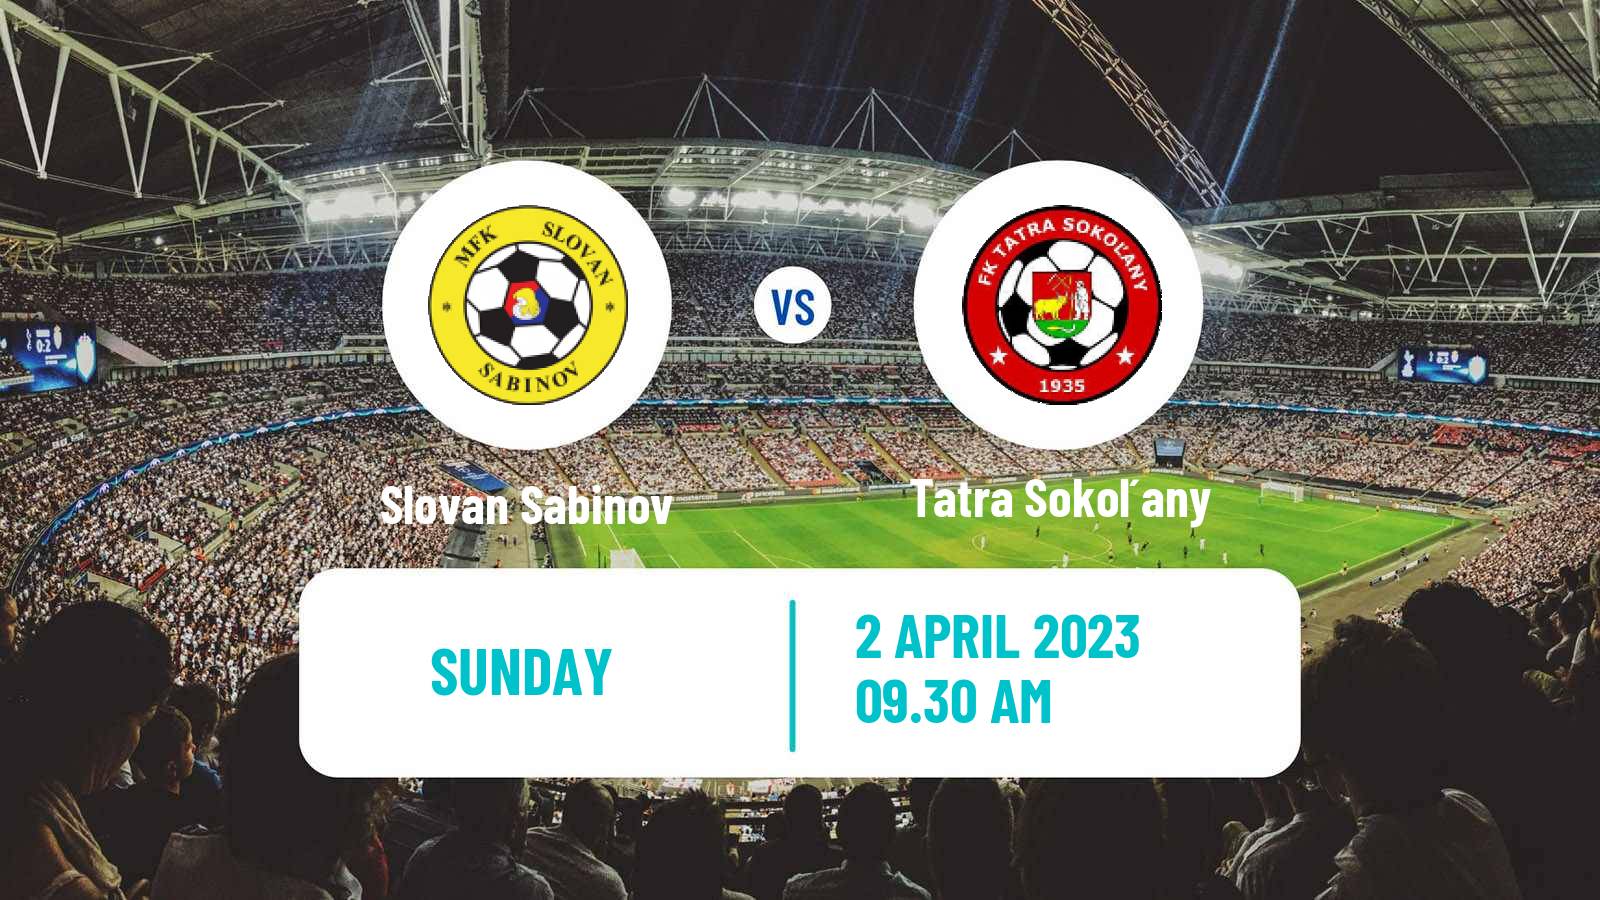 Soccer Slovak 4 Liga East Slovan Sabinov - Tatra Sokoľany